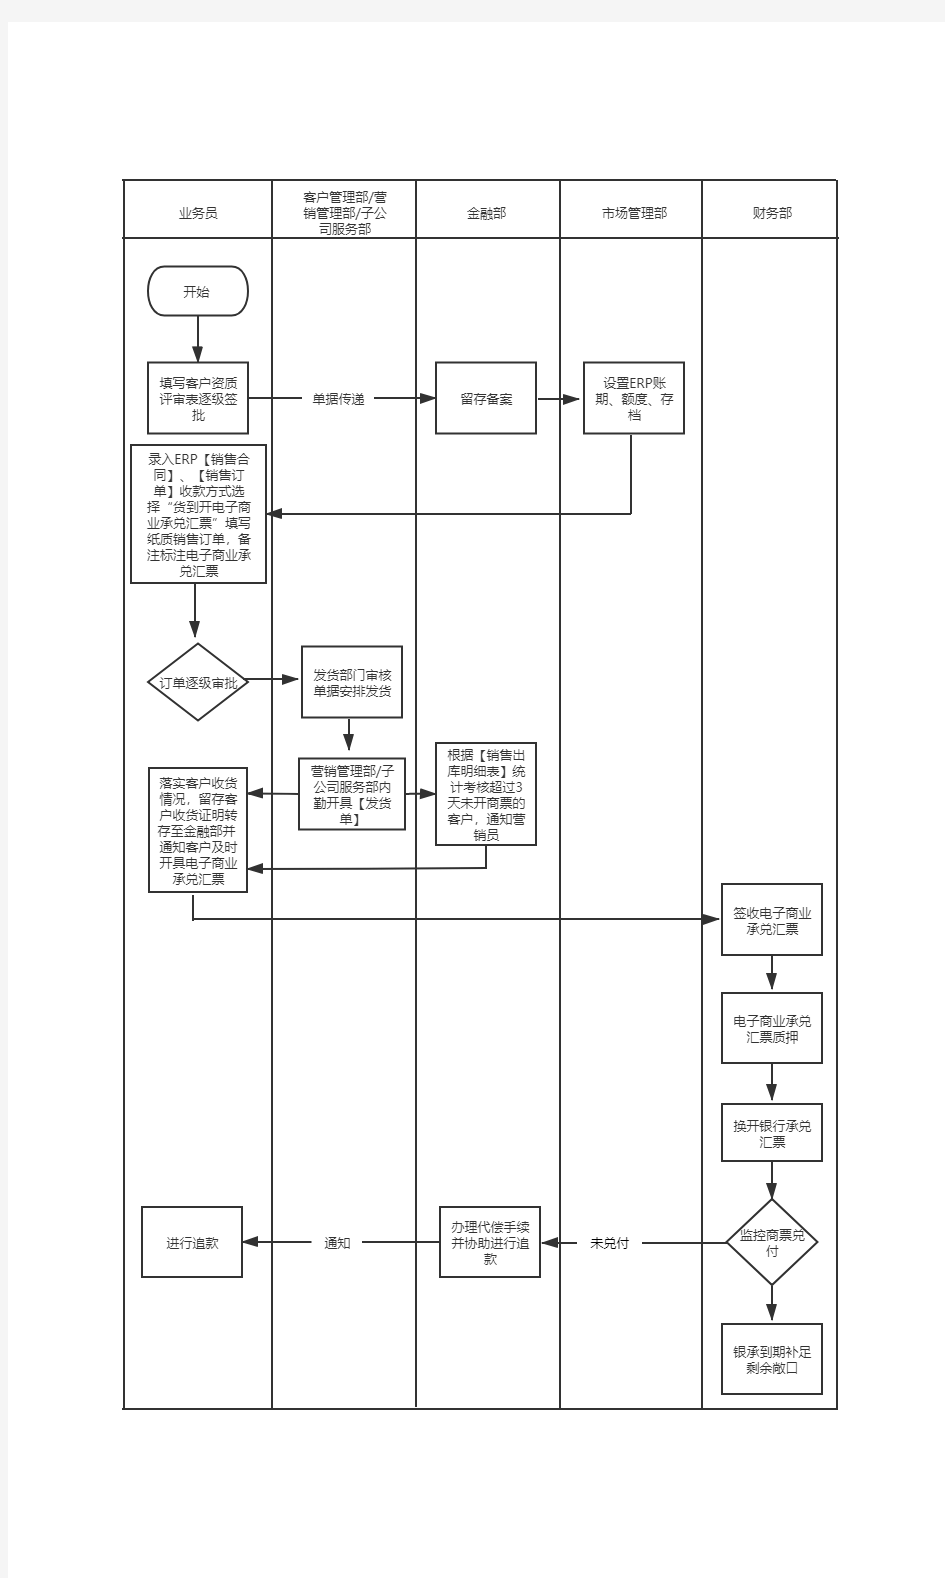 兴业银行供应链金融业务流程图 完整流程图